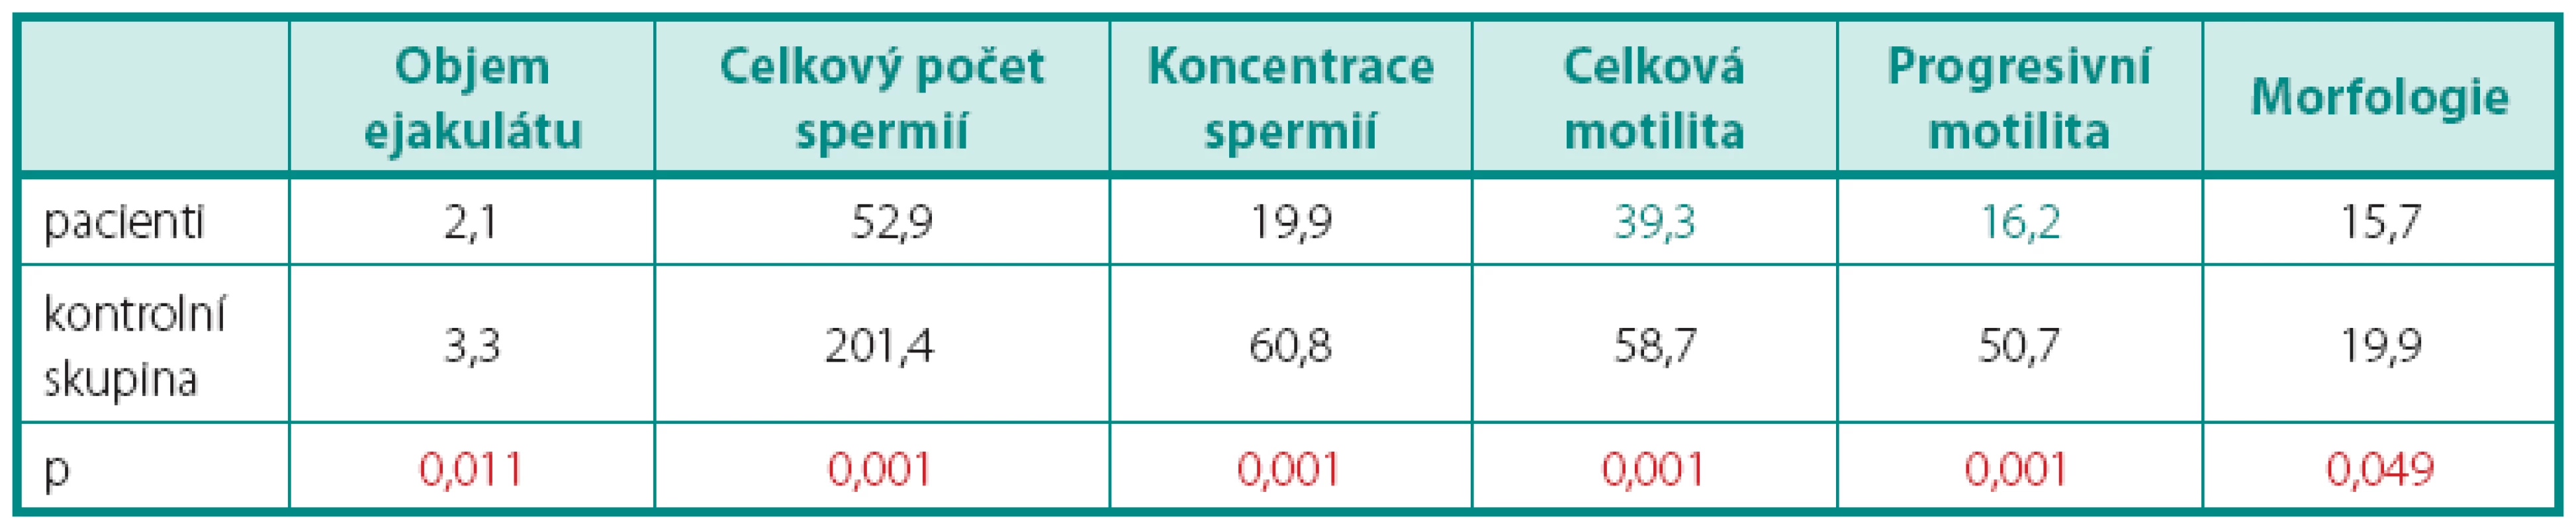 Porovnání hodnot parametrů spermiogramu mezi skupinou pacientů a kontrolní skupinou
Table 3. Comparison of sperm analysis parameters between group of patients and control group